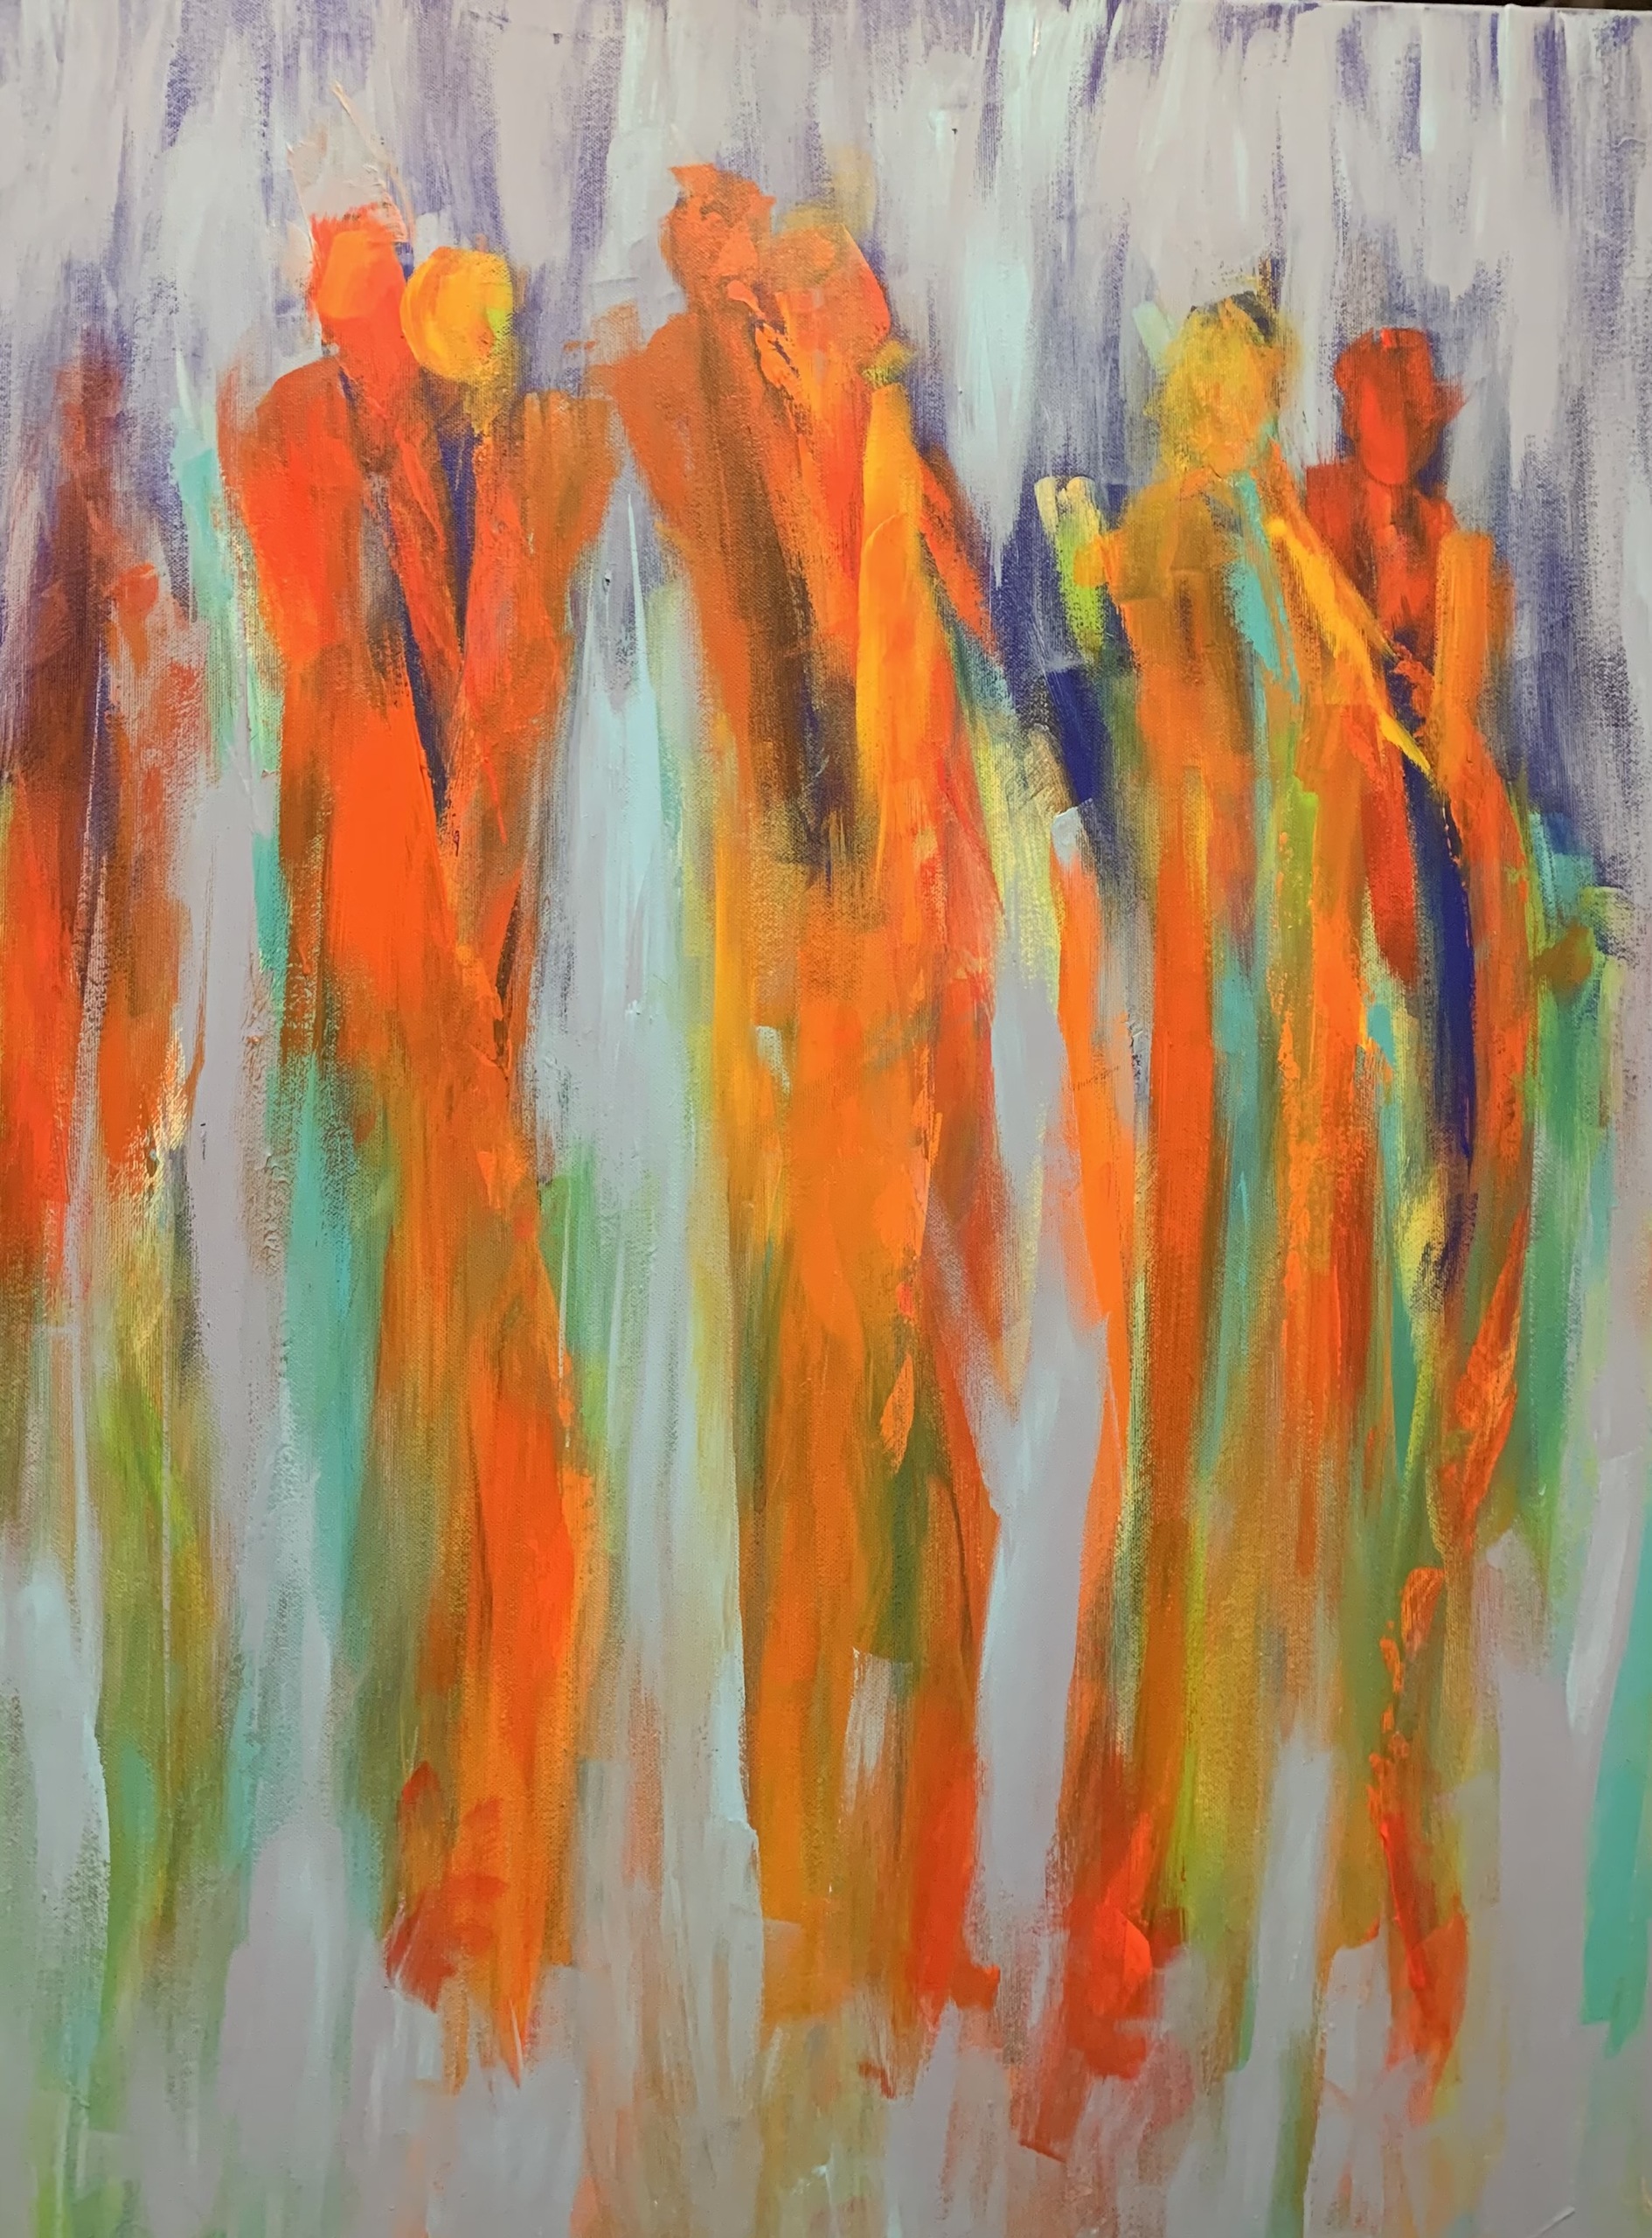 Skønne varme forårsfarver i dette abstrakte maleri med mennesker.